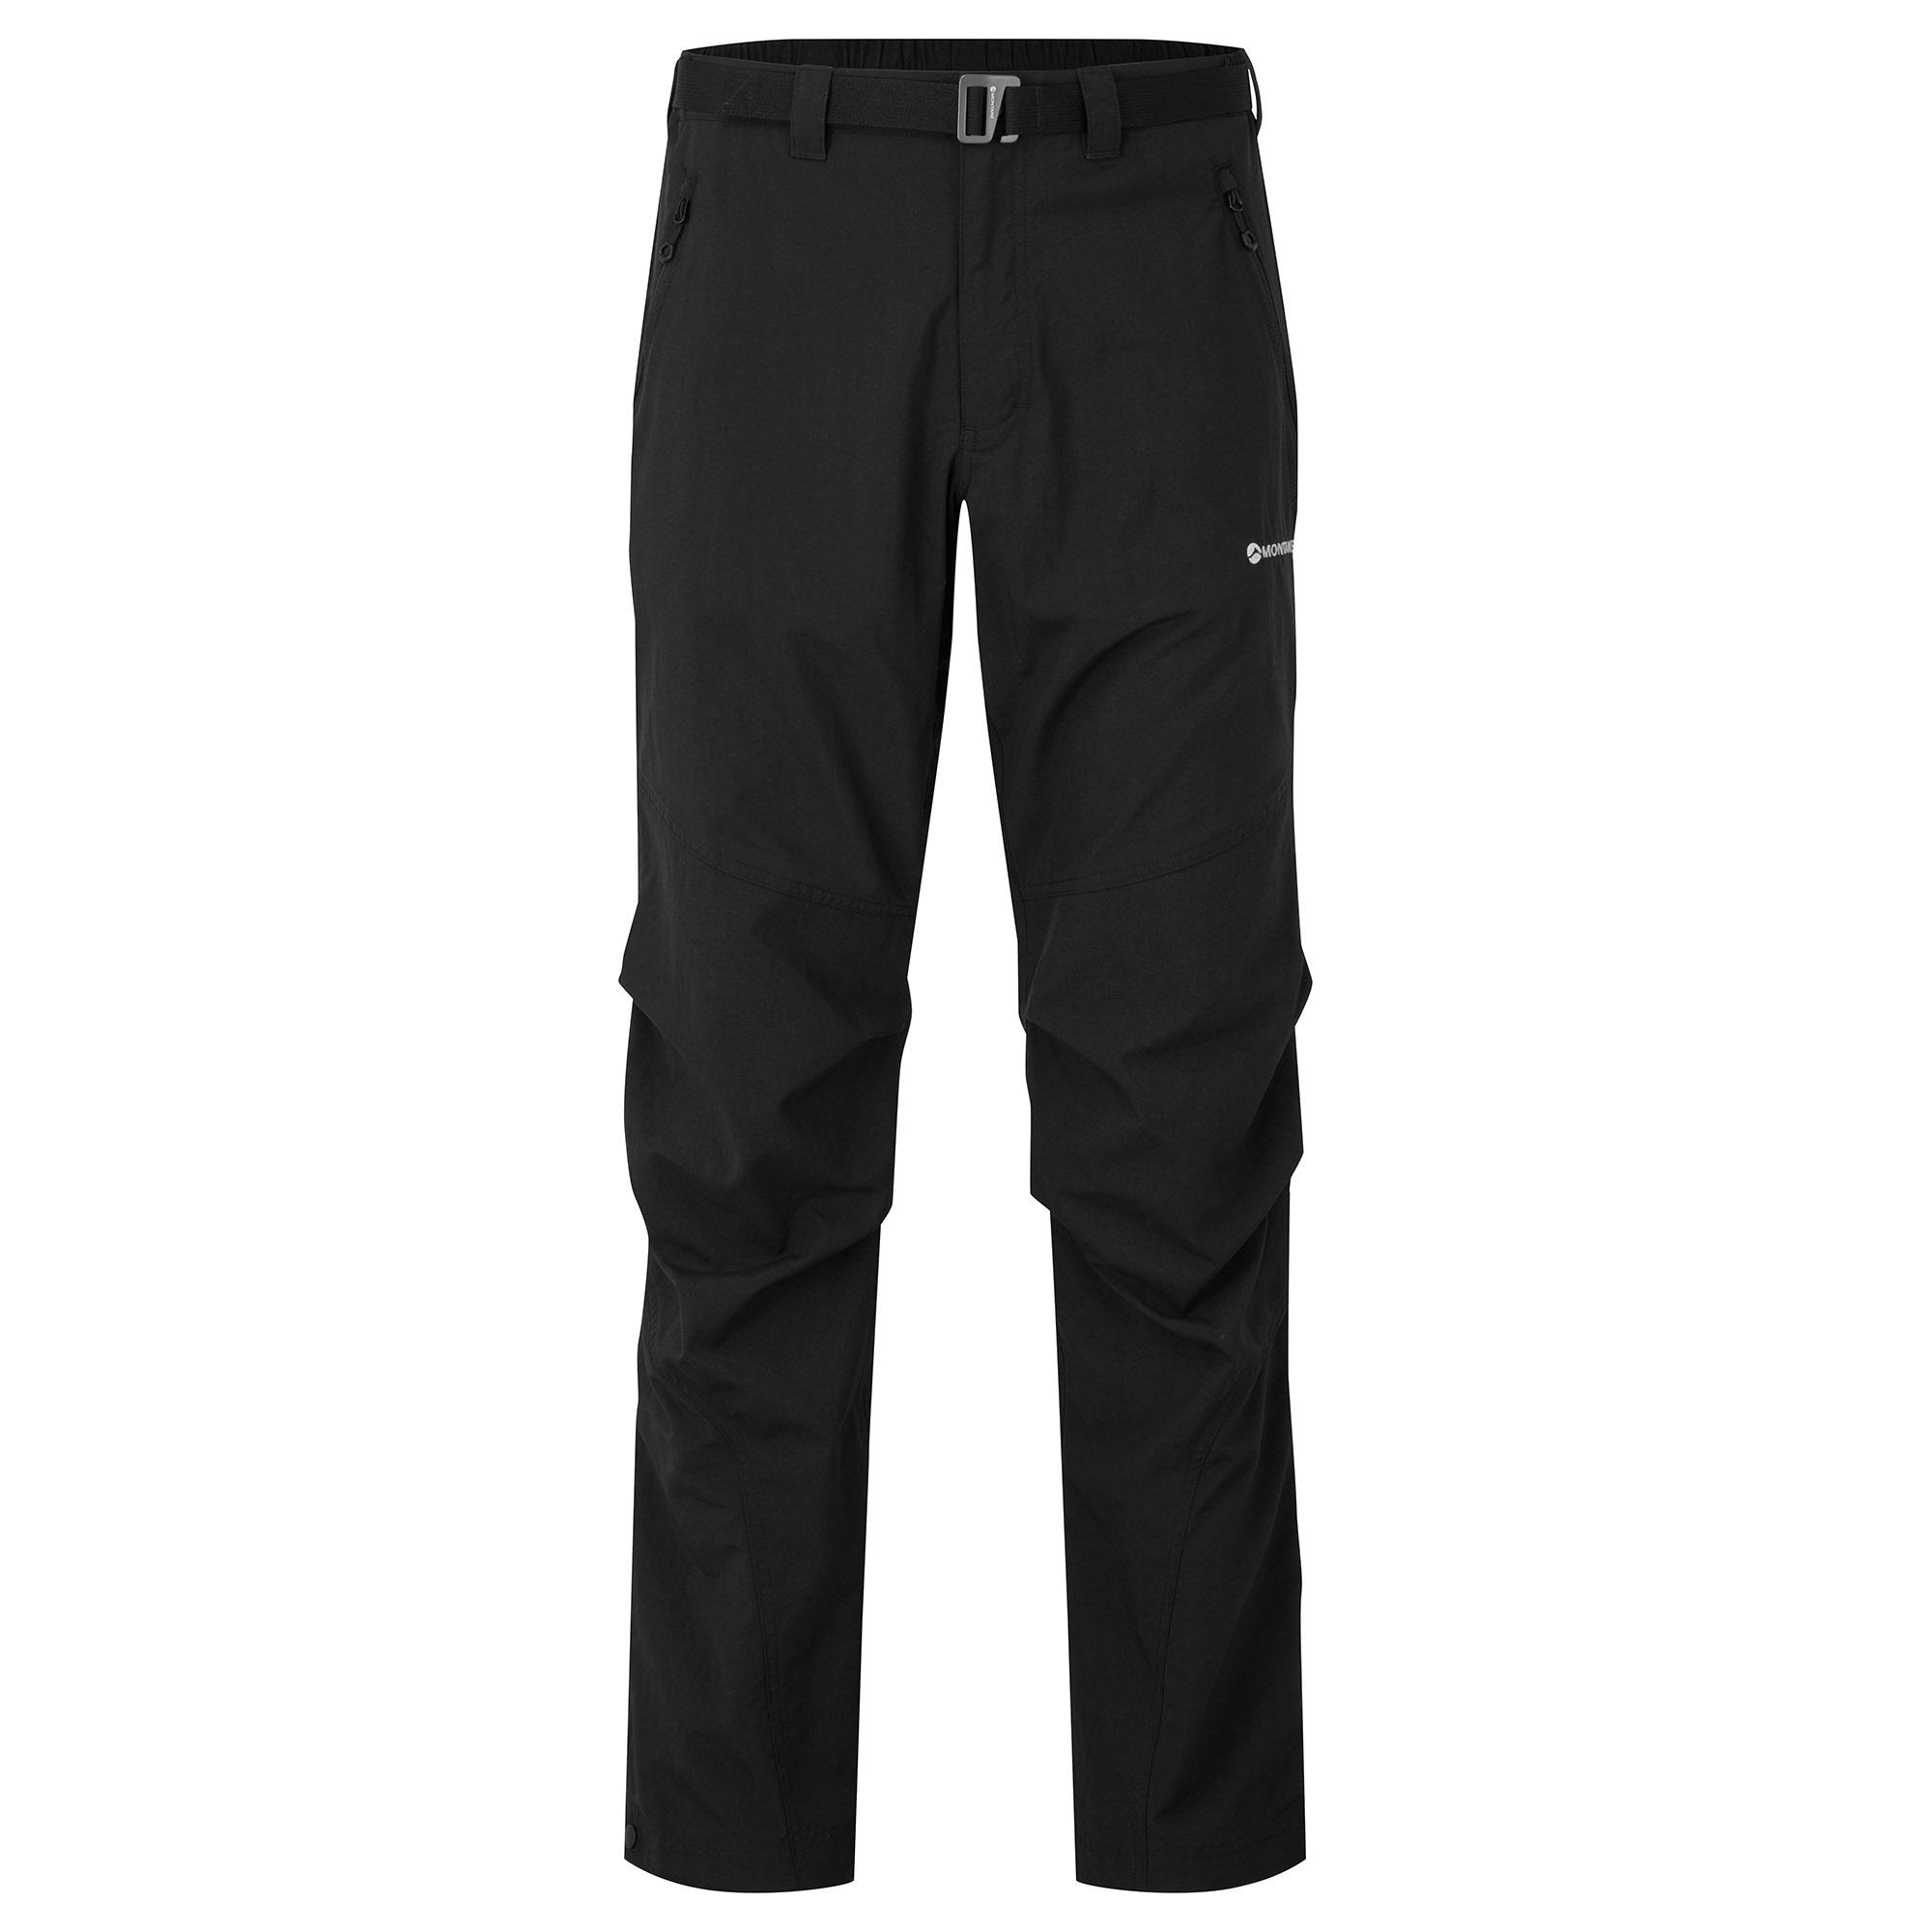 Montane pánské softshellové kalhoty Terra Pants - Zkrácené Nohavice Barva: black, Velikost: 30